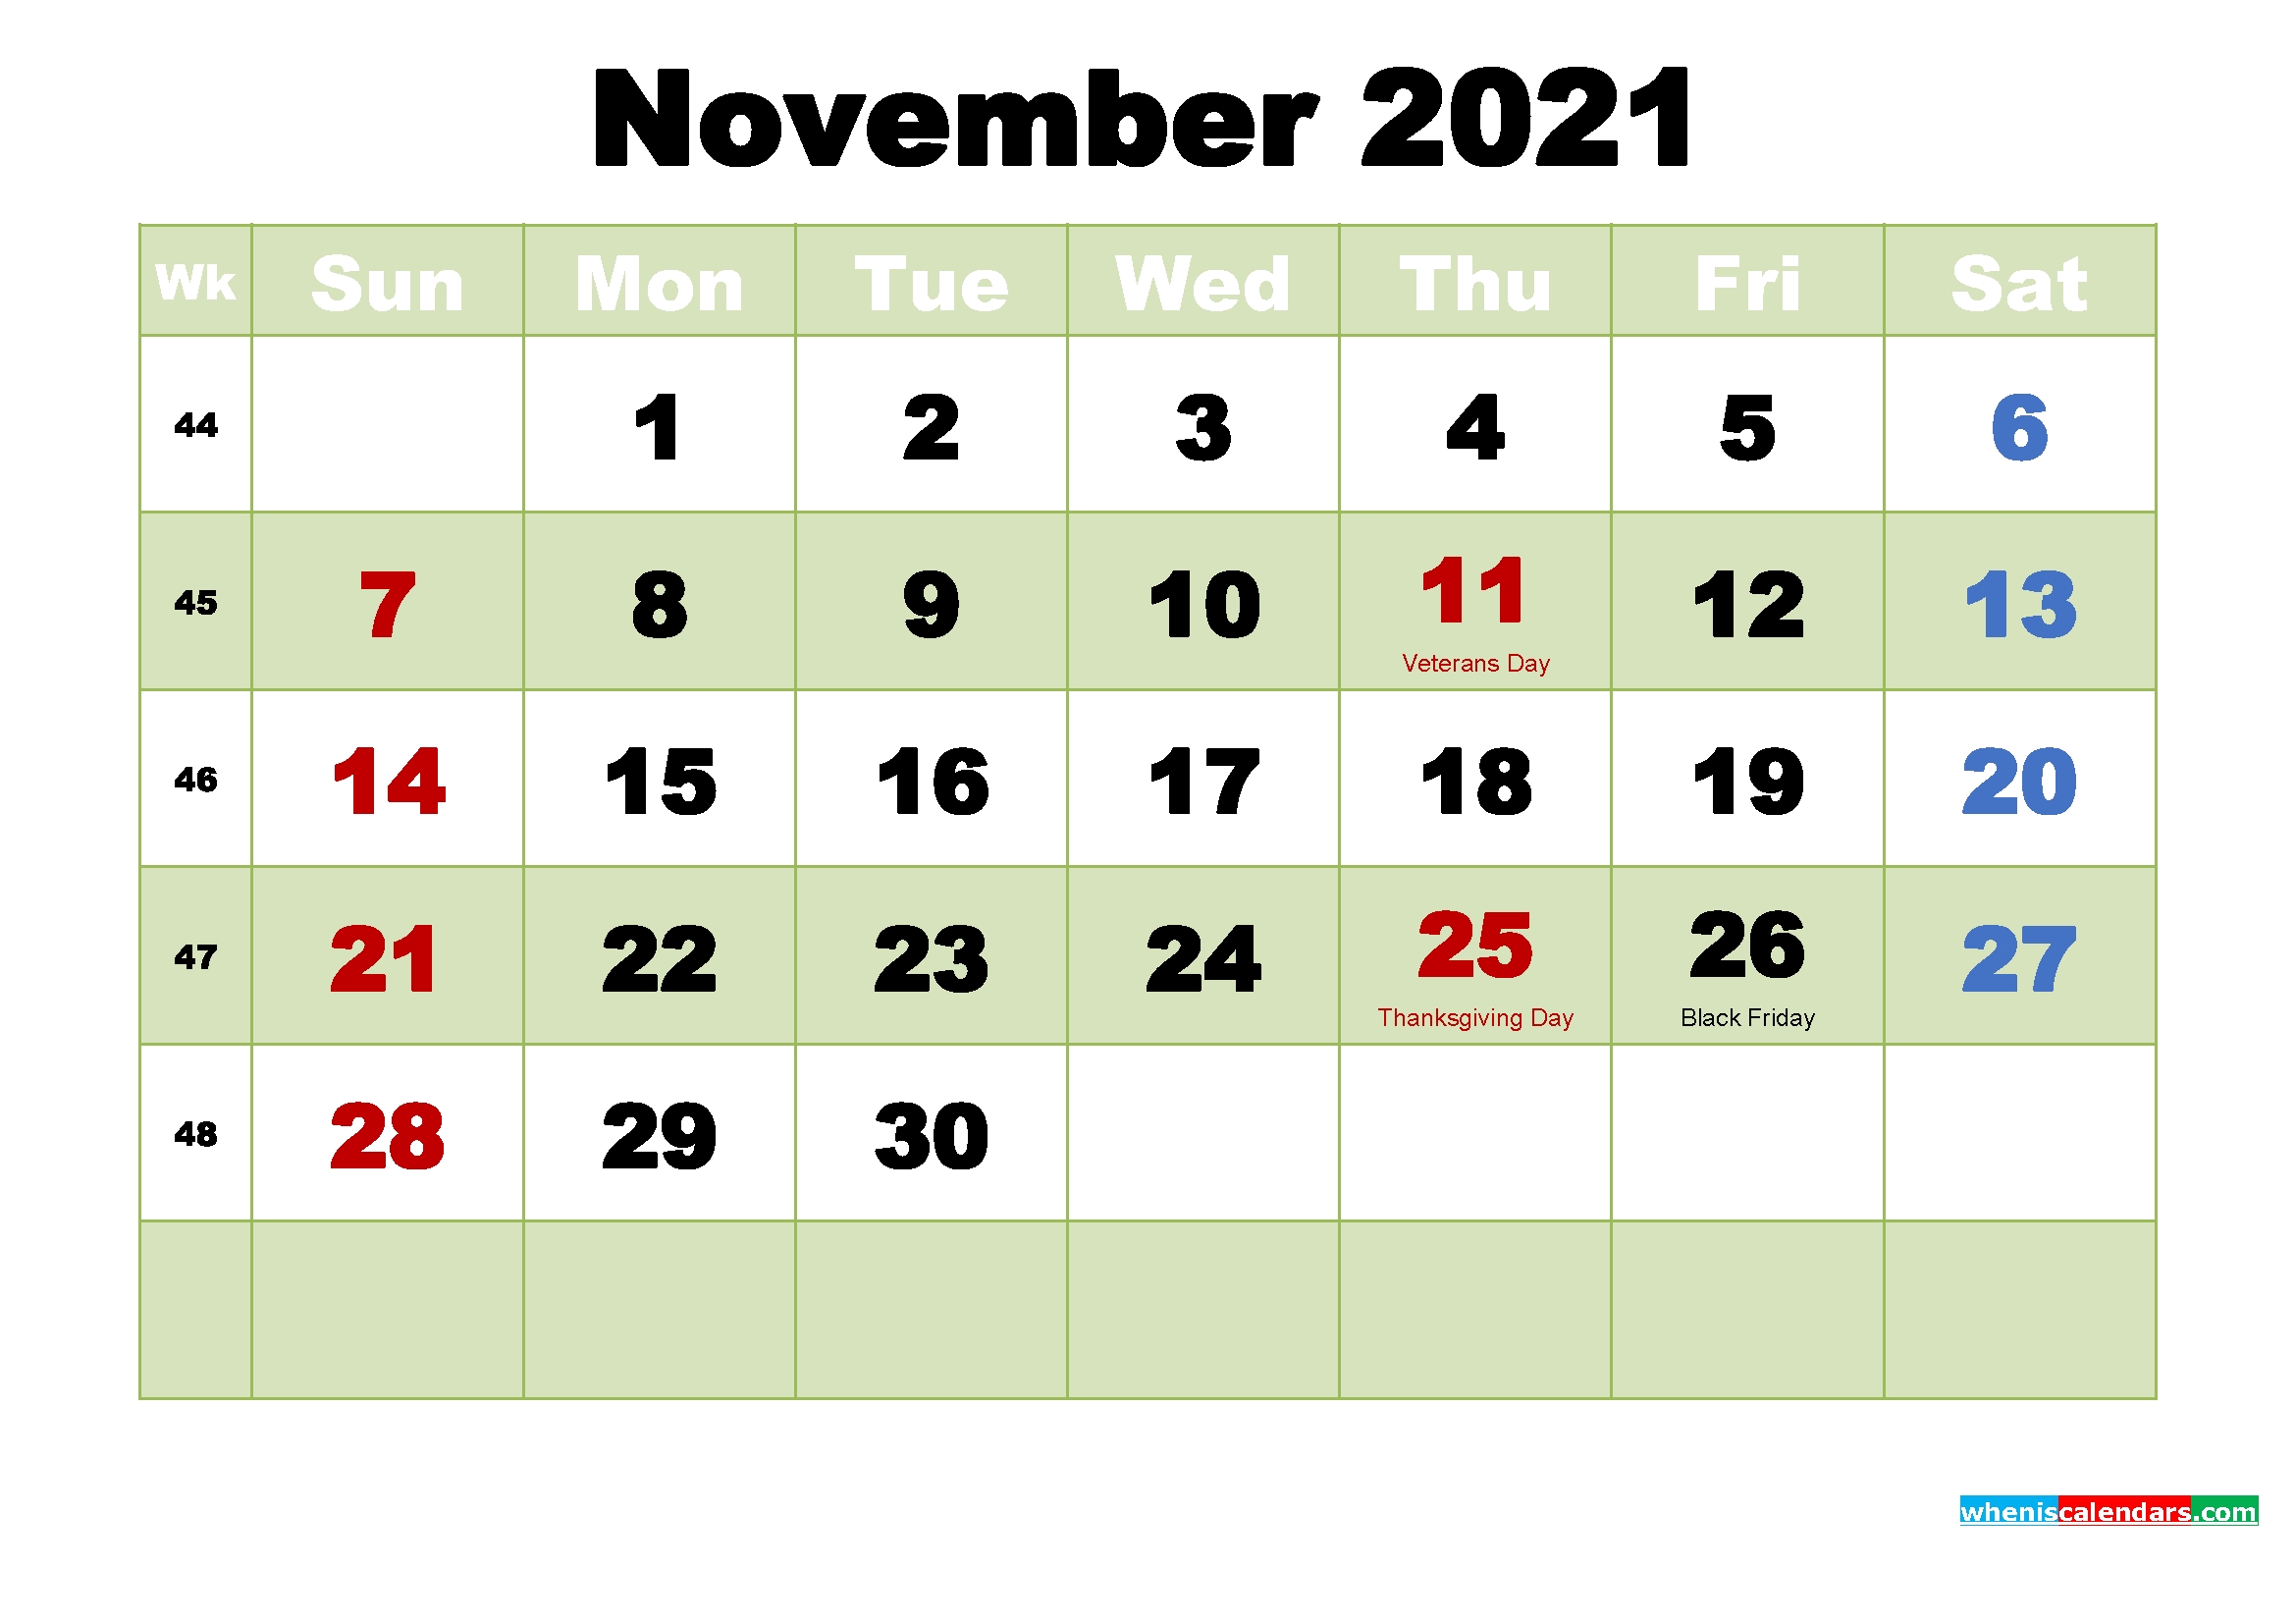 November 2021 Wallpaper Calendar | Lunar Calendar August 2021 Lunar Calendar